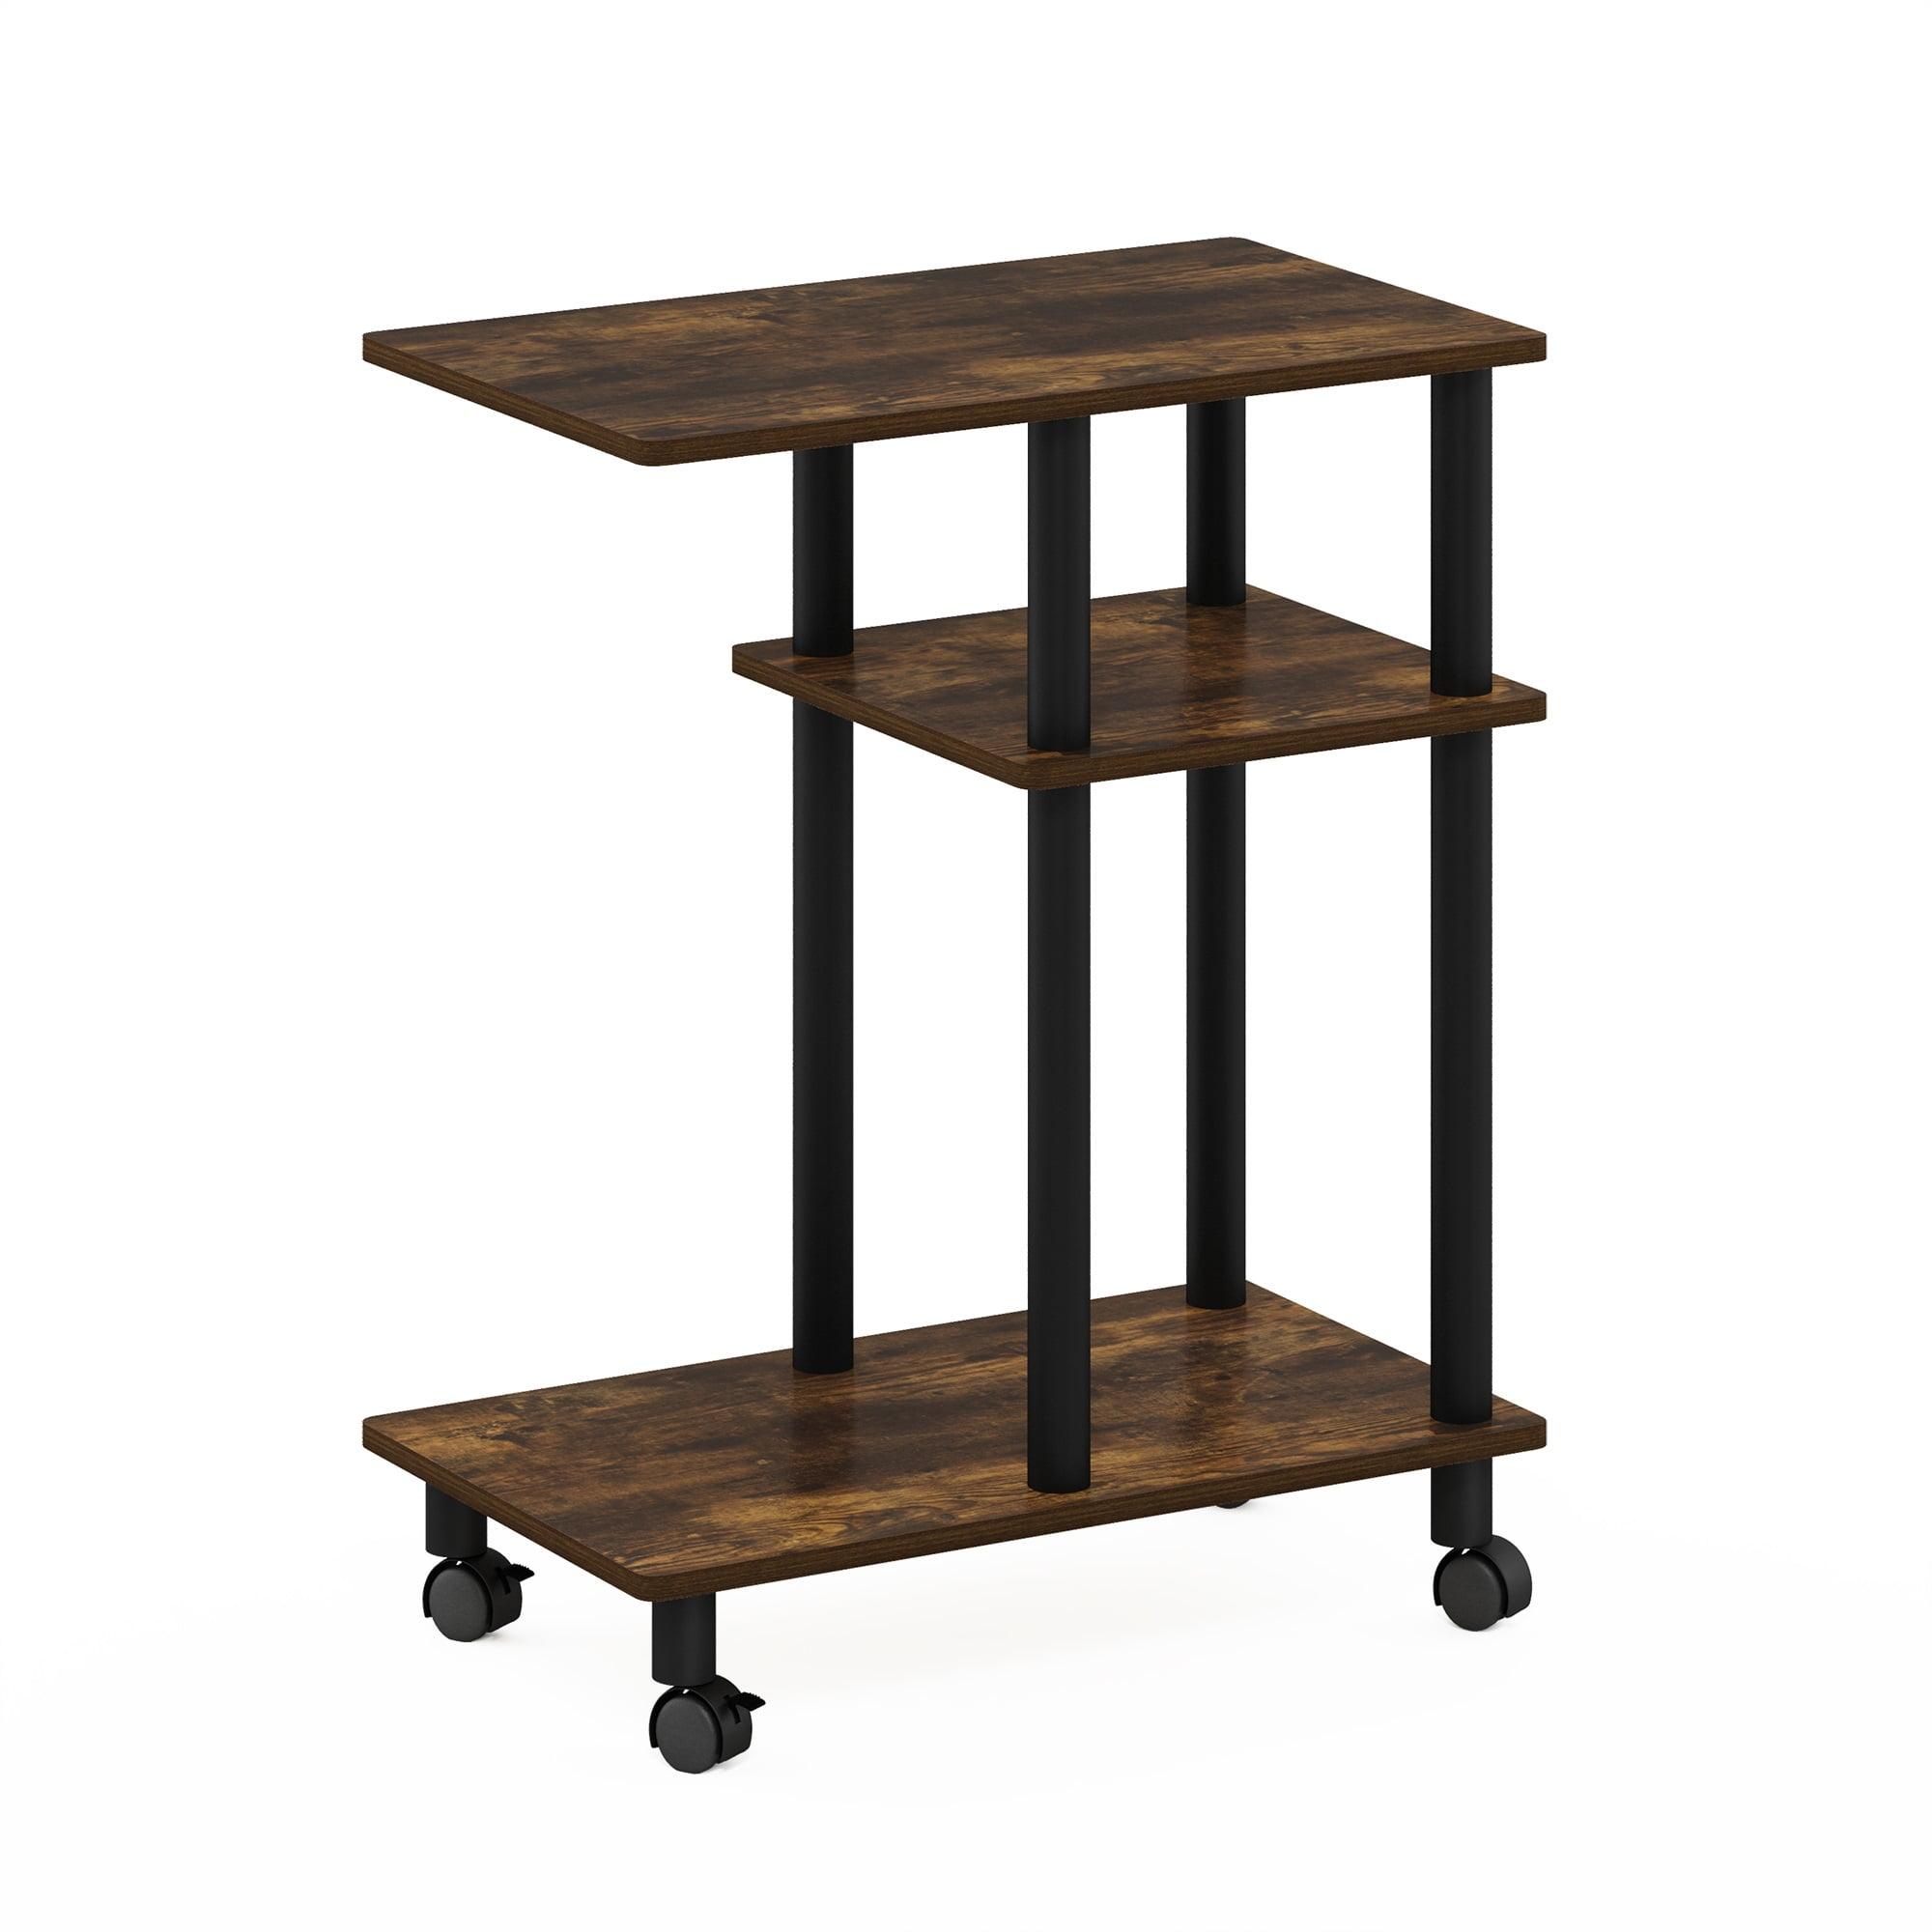 Amber Pine & Black Engineered Wood U-Shaped Side Table on Casters